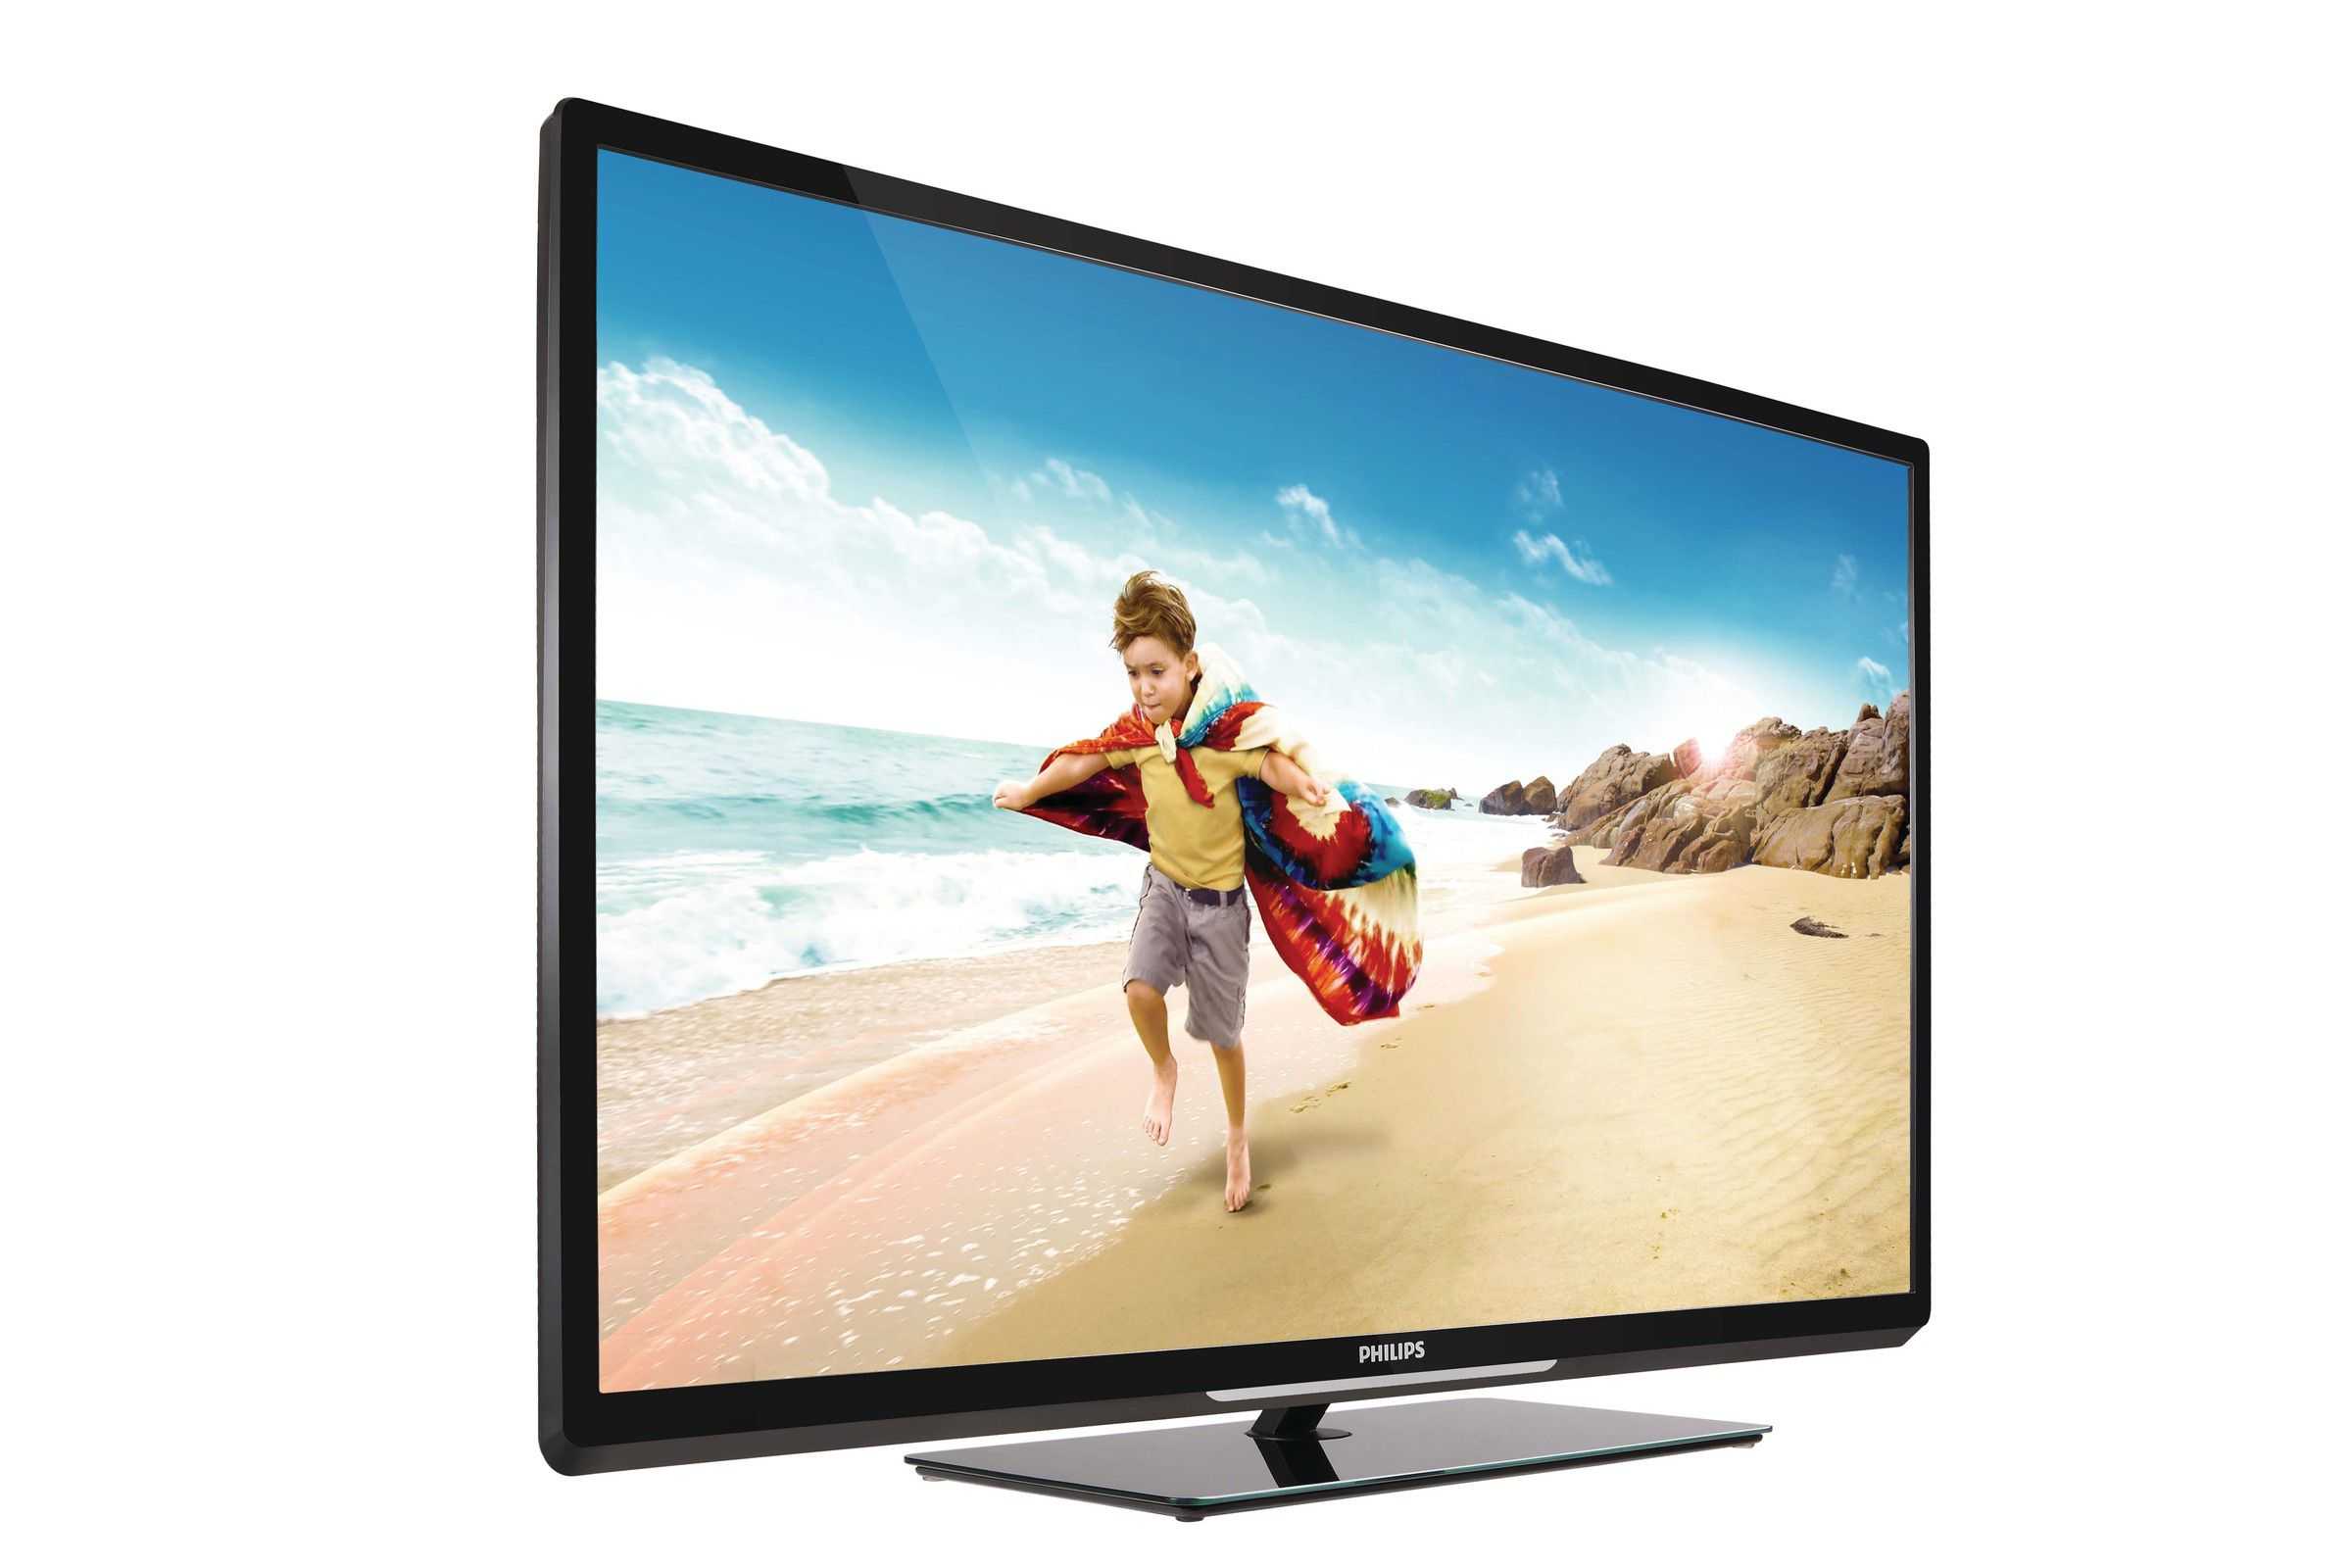 Philips 47pfl7666h - купить , скидки, цена, отзывы, обзор, характеристики - телевизоры